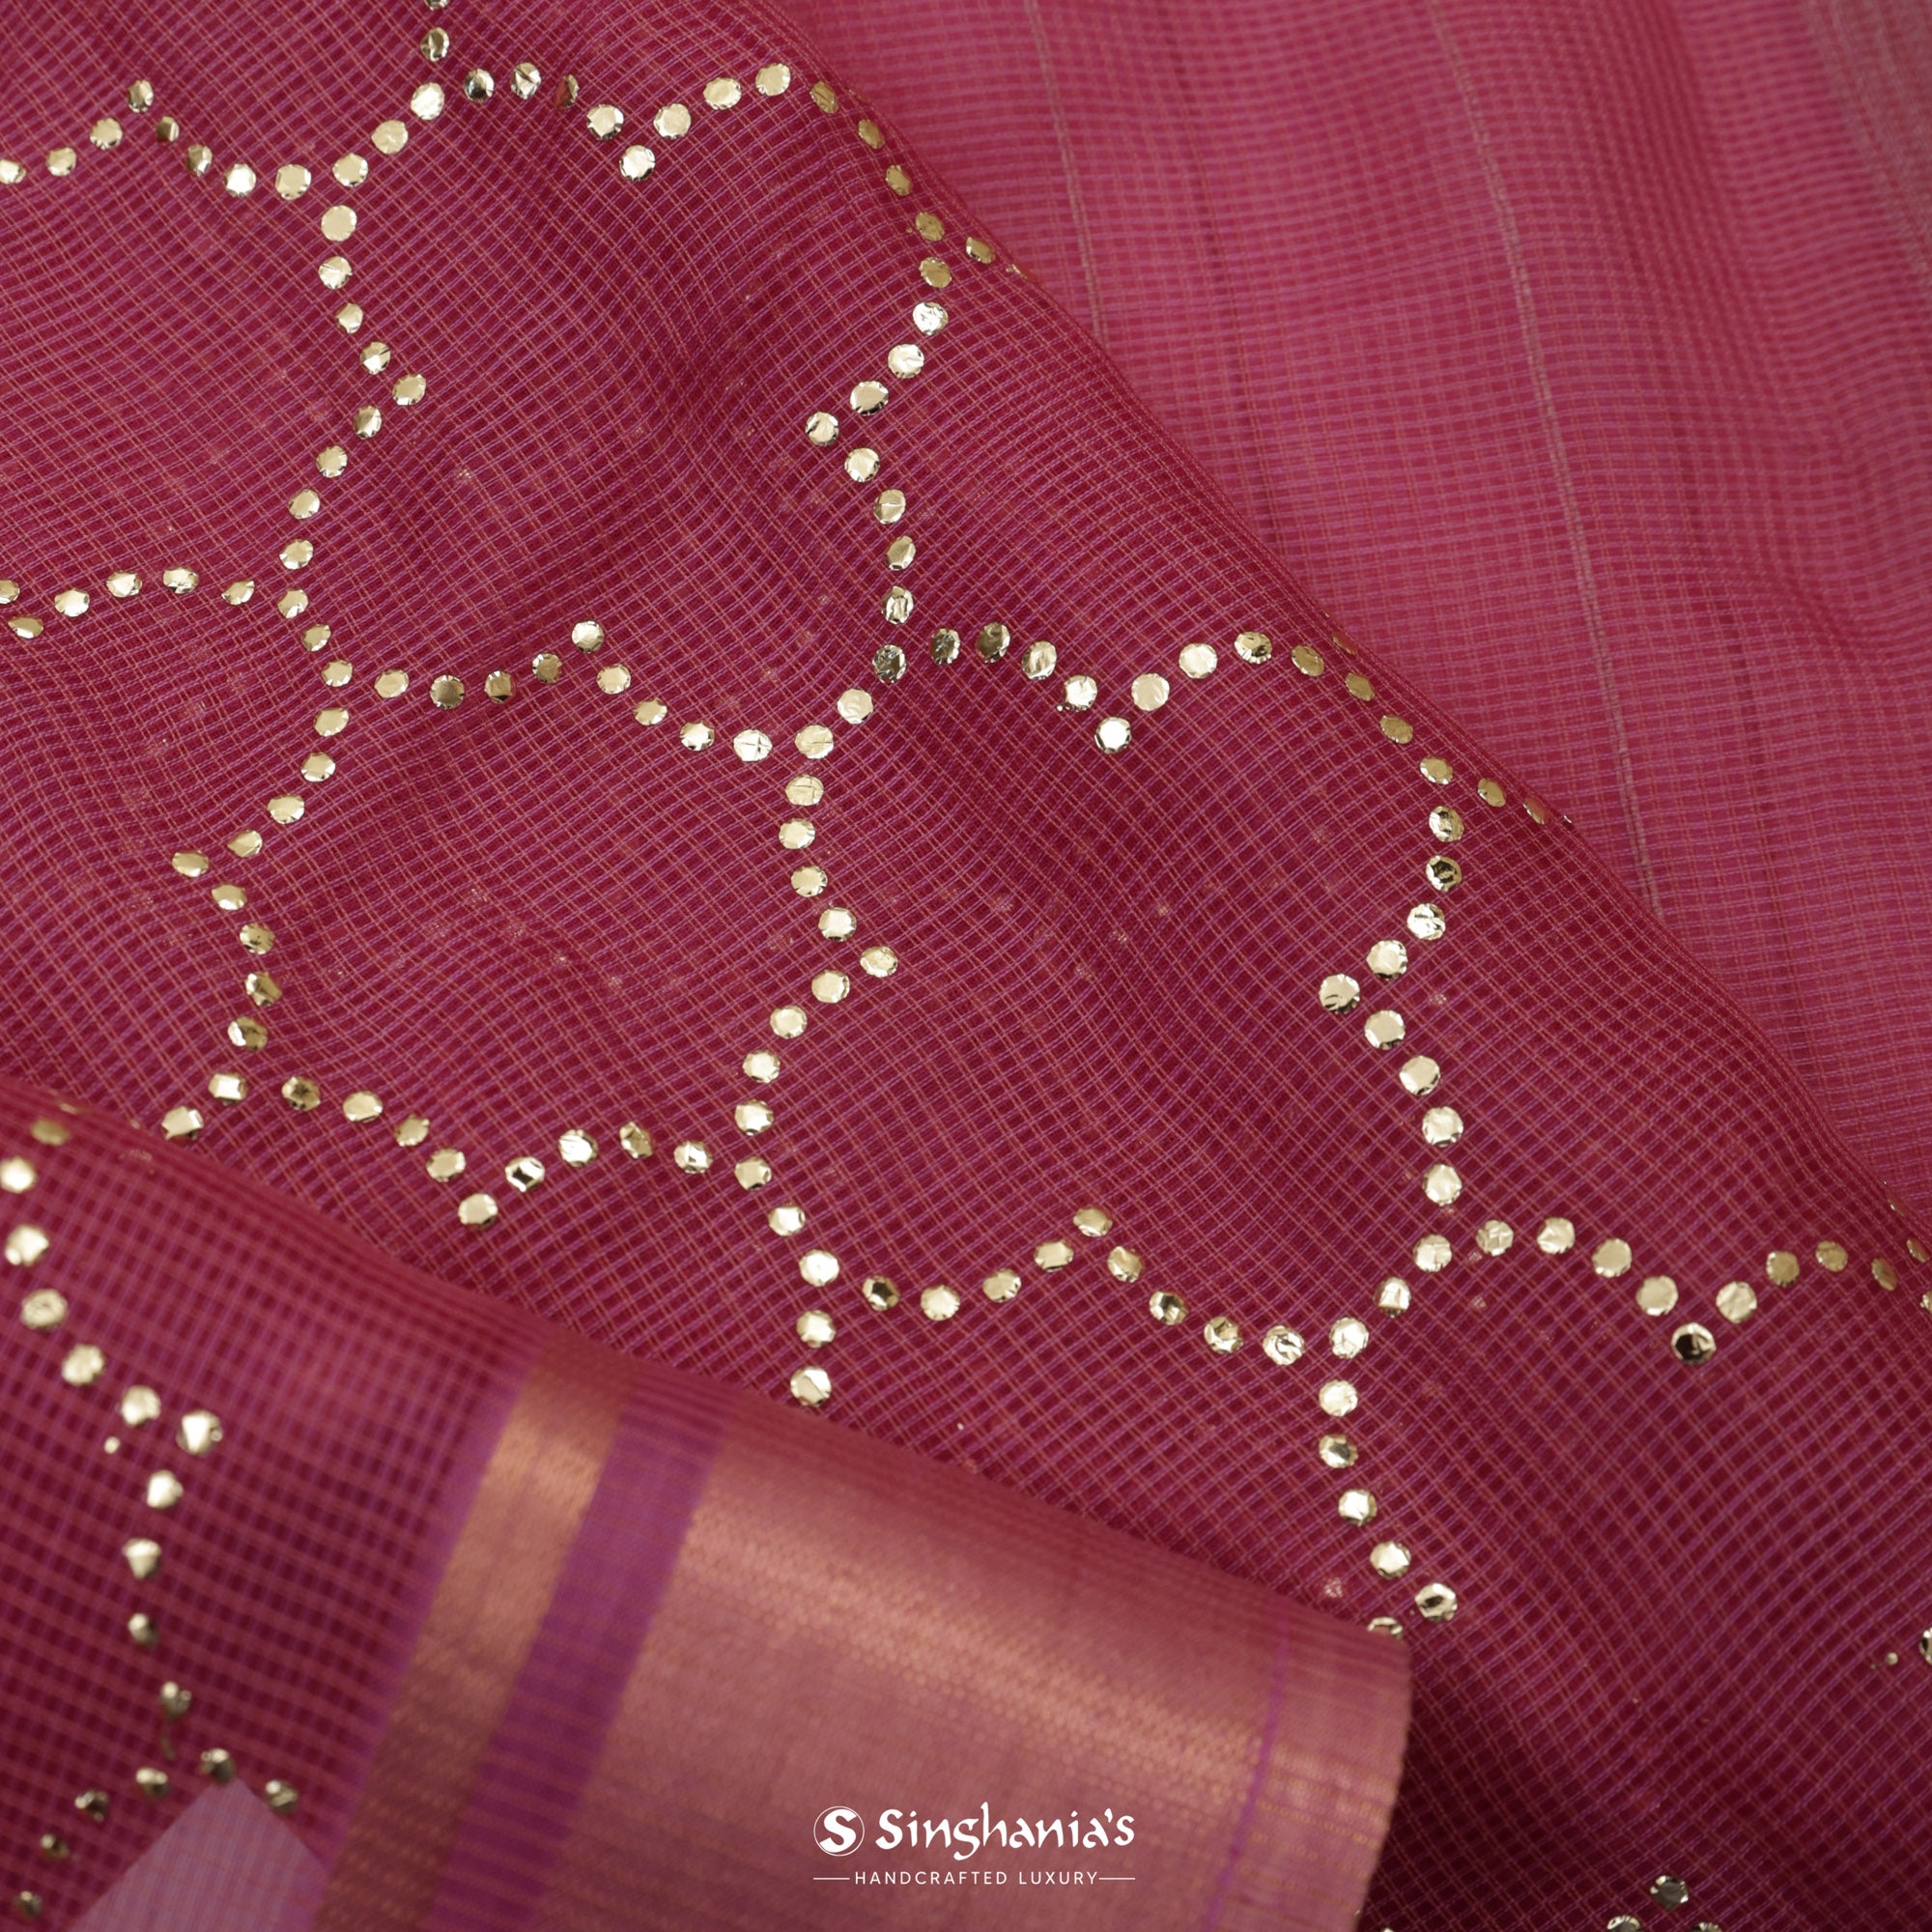 Rouge Pink Kota Silk Saree With Mukaish Work In Grid Pattern